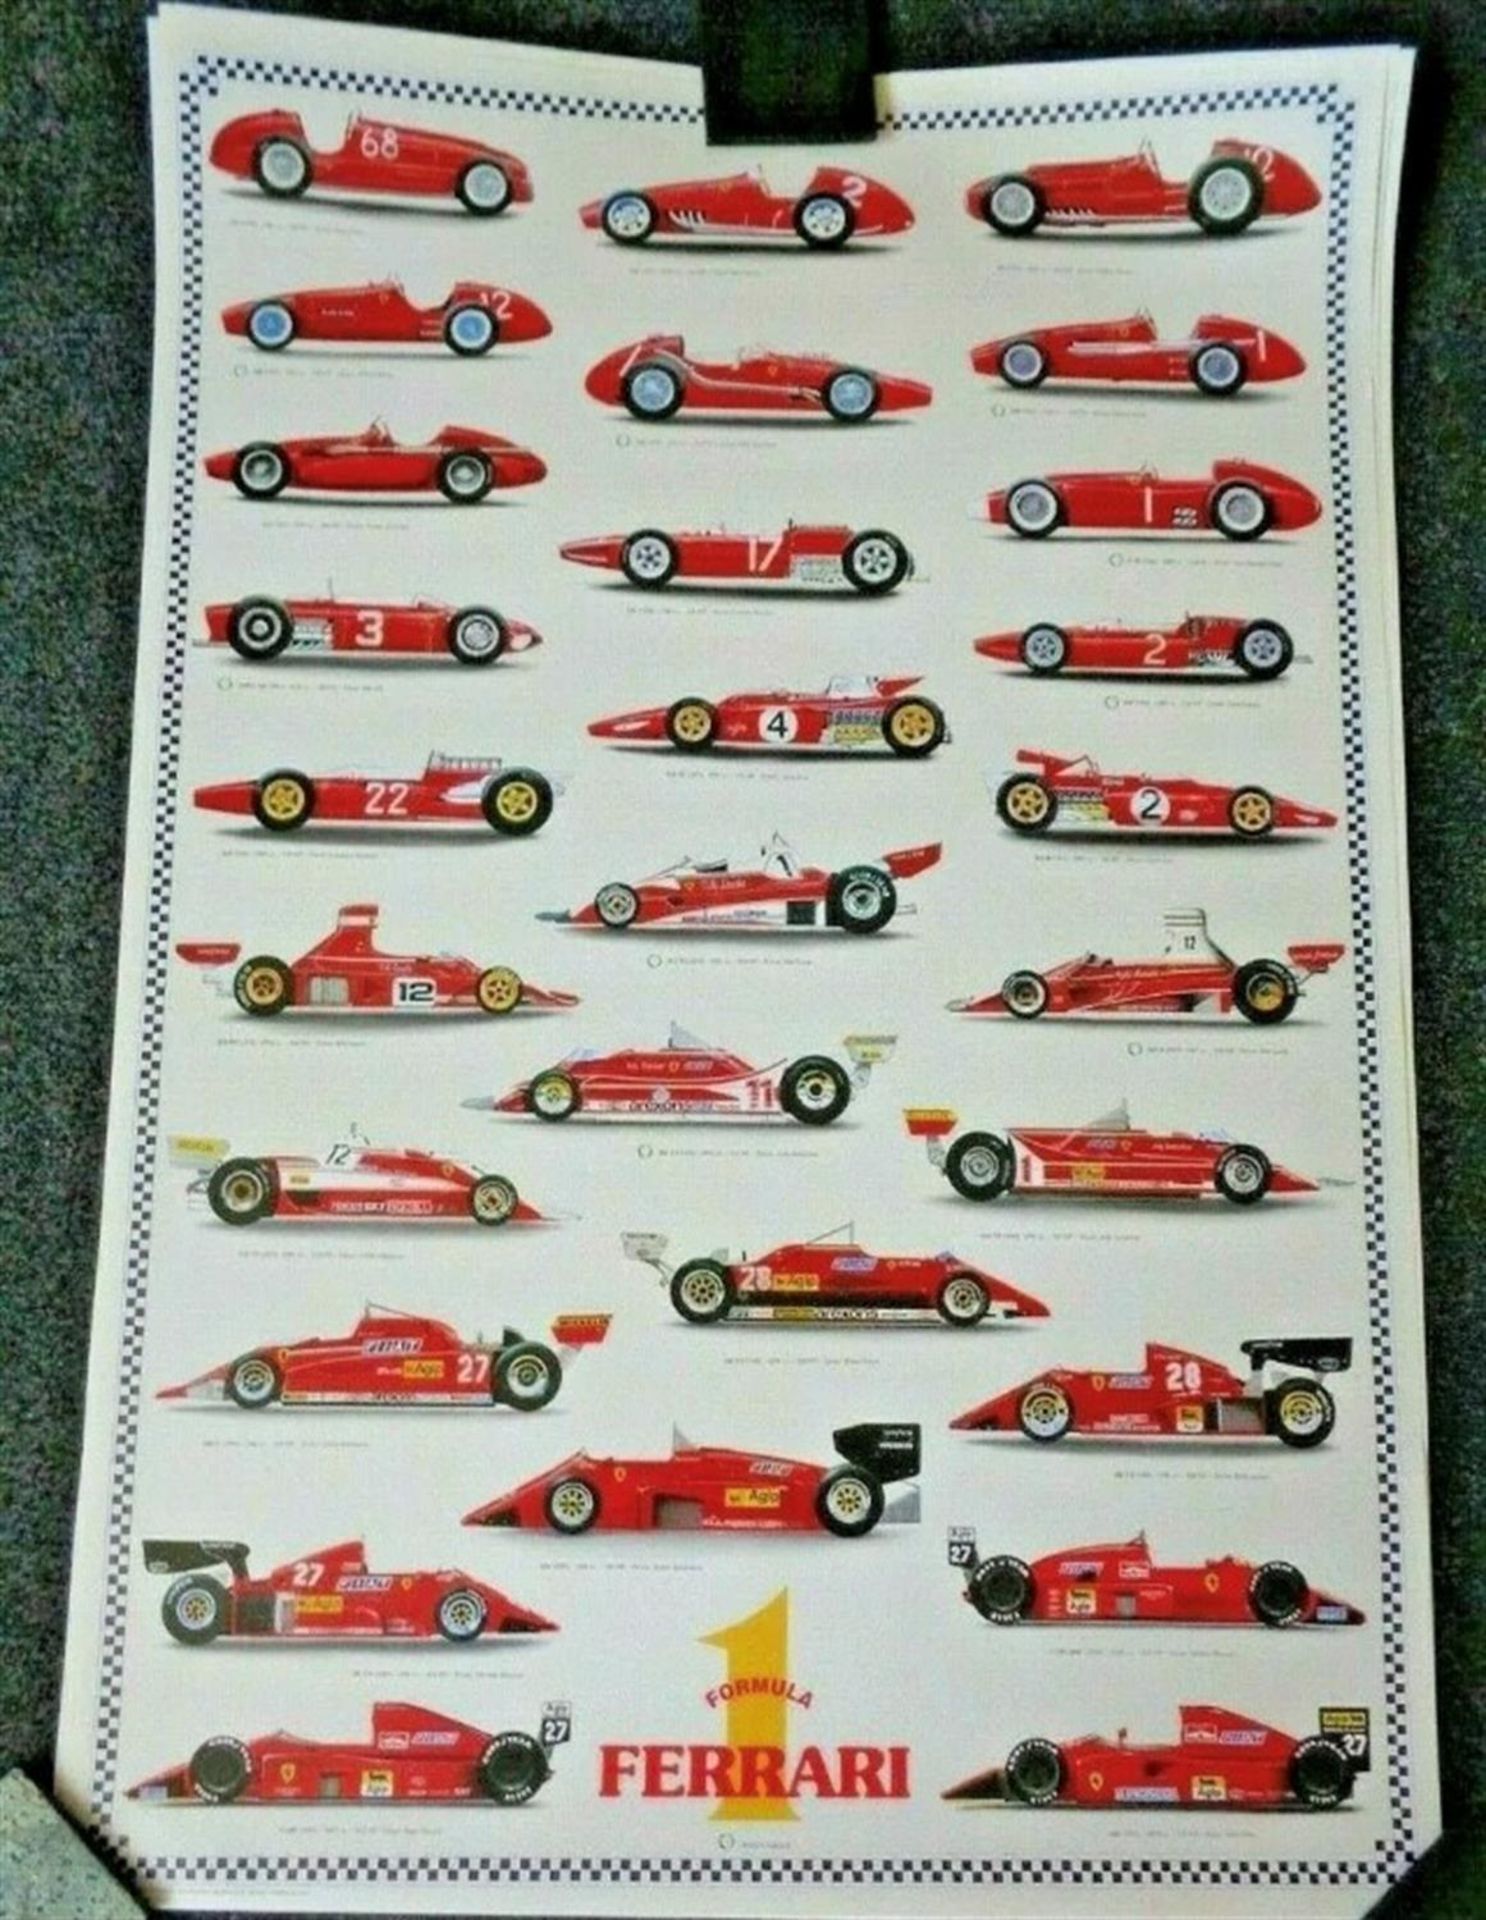 A rare Italian Arti Grafiche Historic Formula 1 Ferrari poster